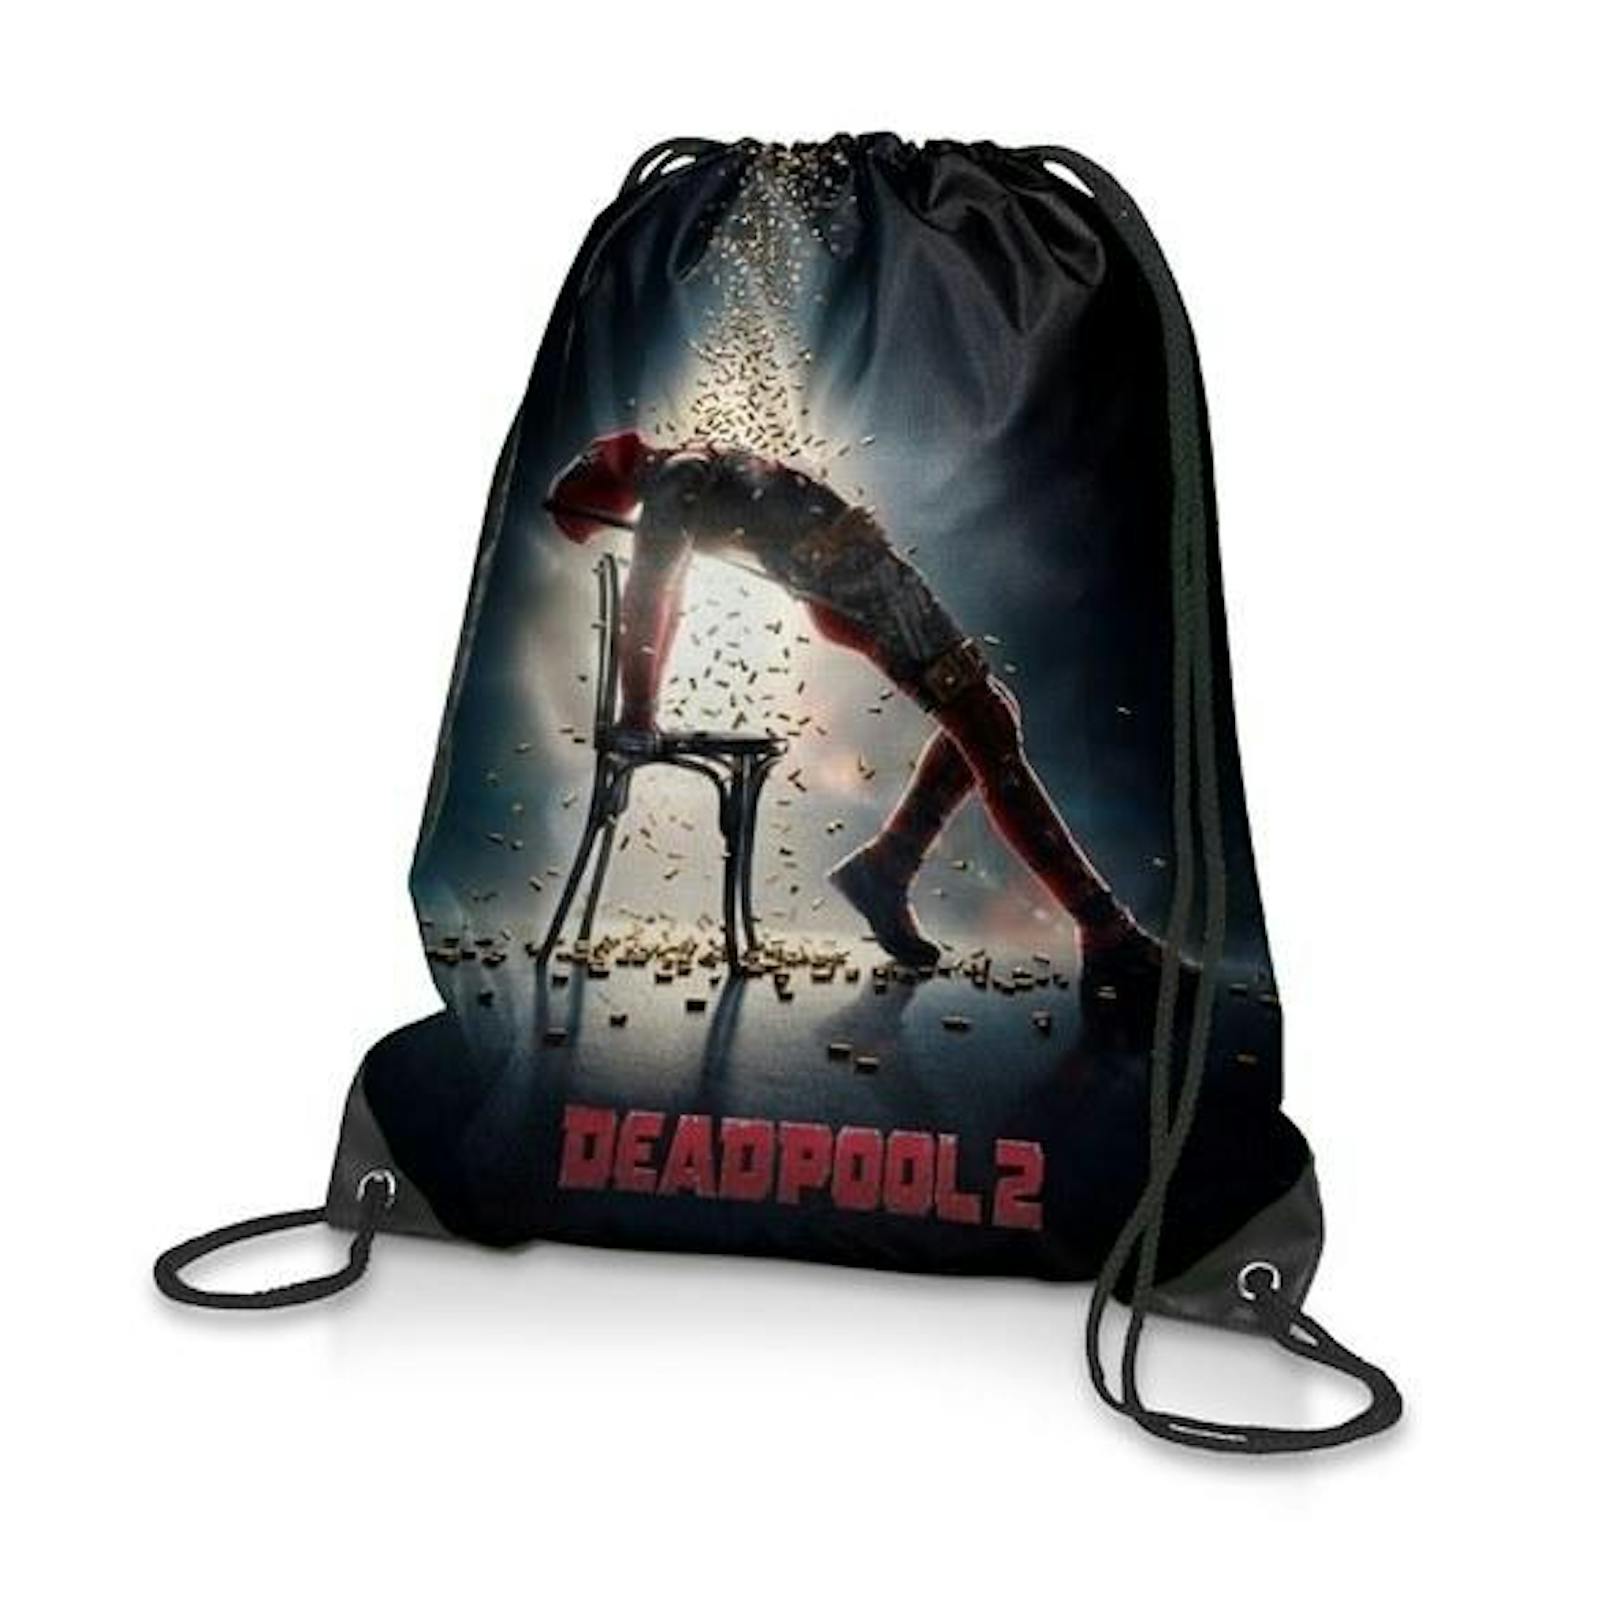 Tasche von "Deadpool 2"